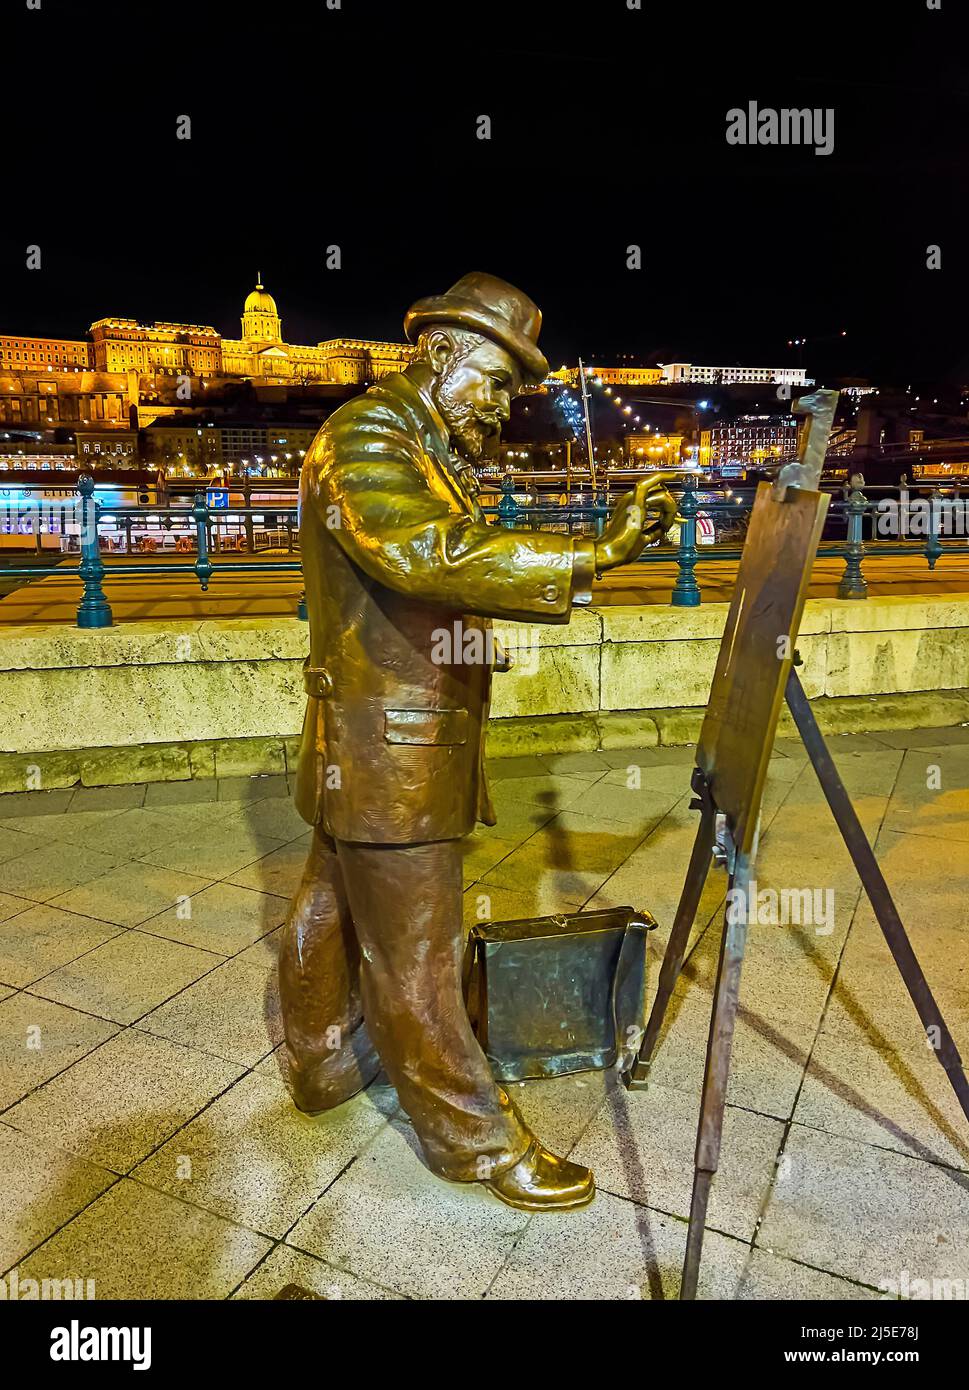 La statua del pittore ungherese Ignac Roskovics al lavoro, situata nel Quay di Belgrado, distretto di Pest, Budapest, Ungheria Foto Stock